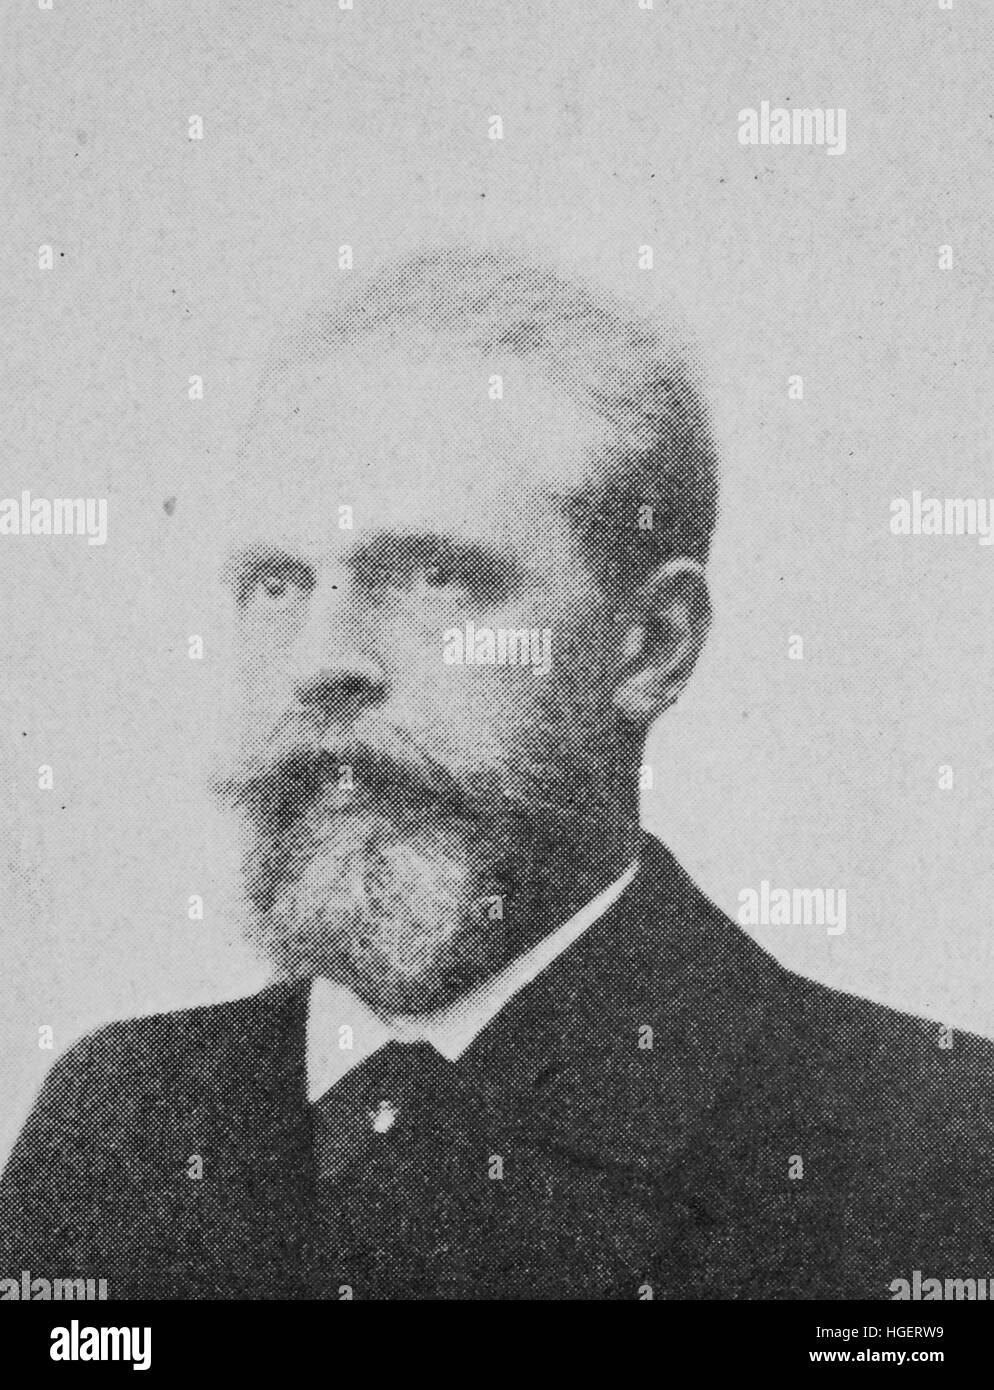 Alexander Georg Supan, 3 mars 1847 - 7 juillet 1920, est un géographe, reproduction d'une photo de l'année 1895, l'amélioration numérique Banque D'Images